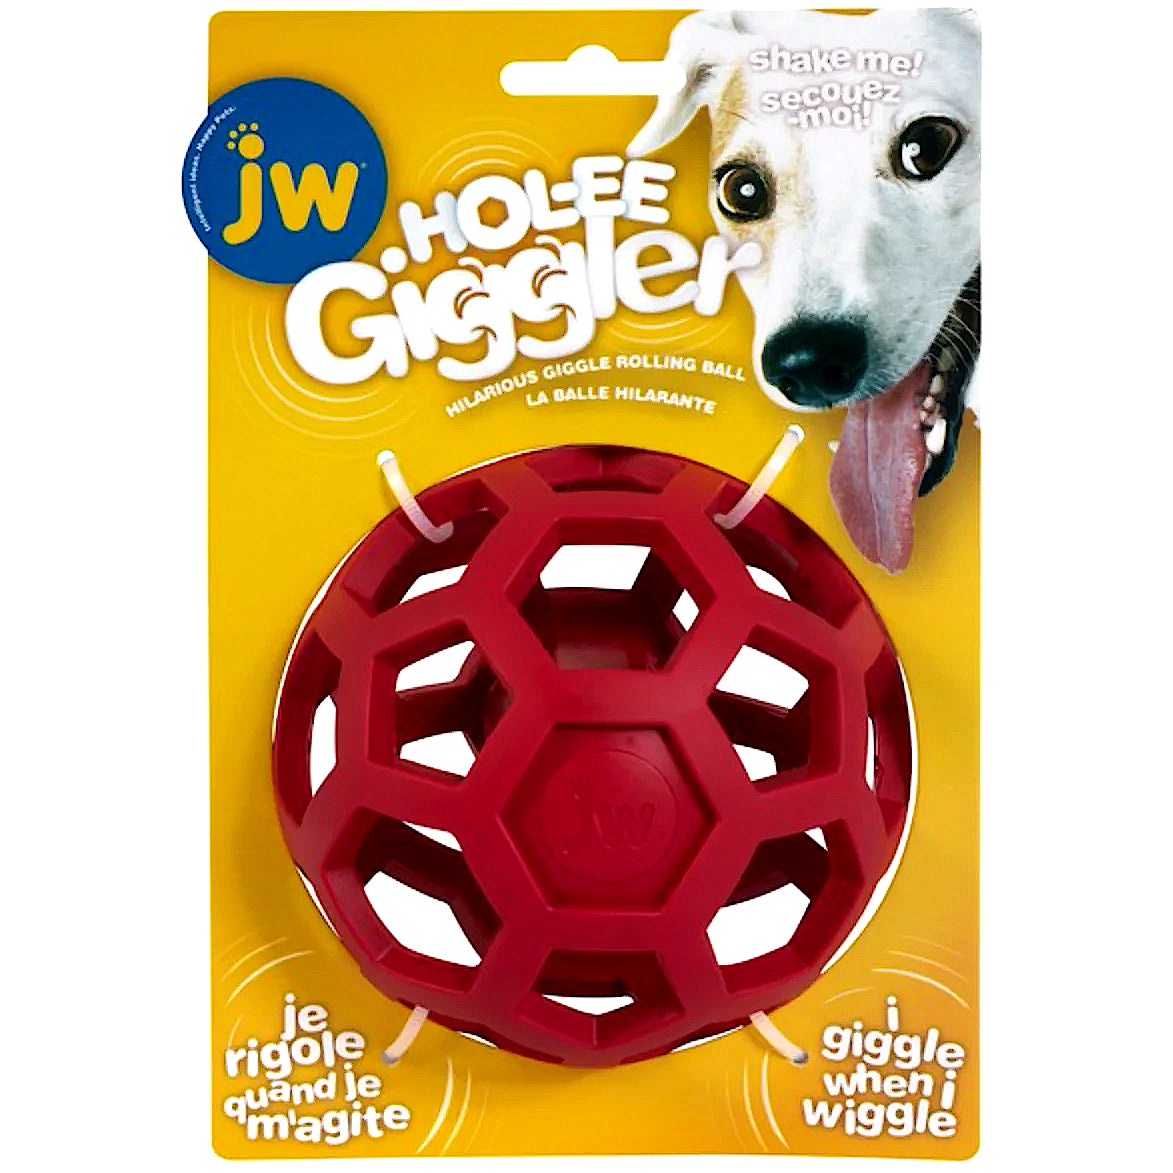 JW Hol-ee Giggler Ball Dog Toy